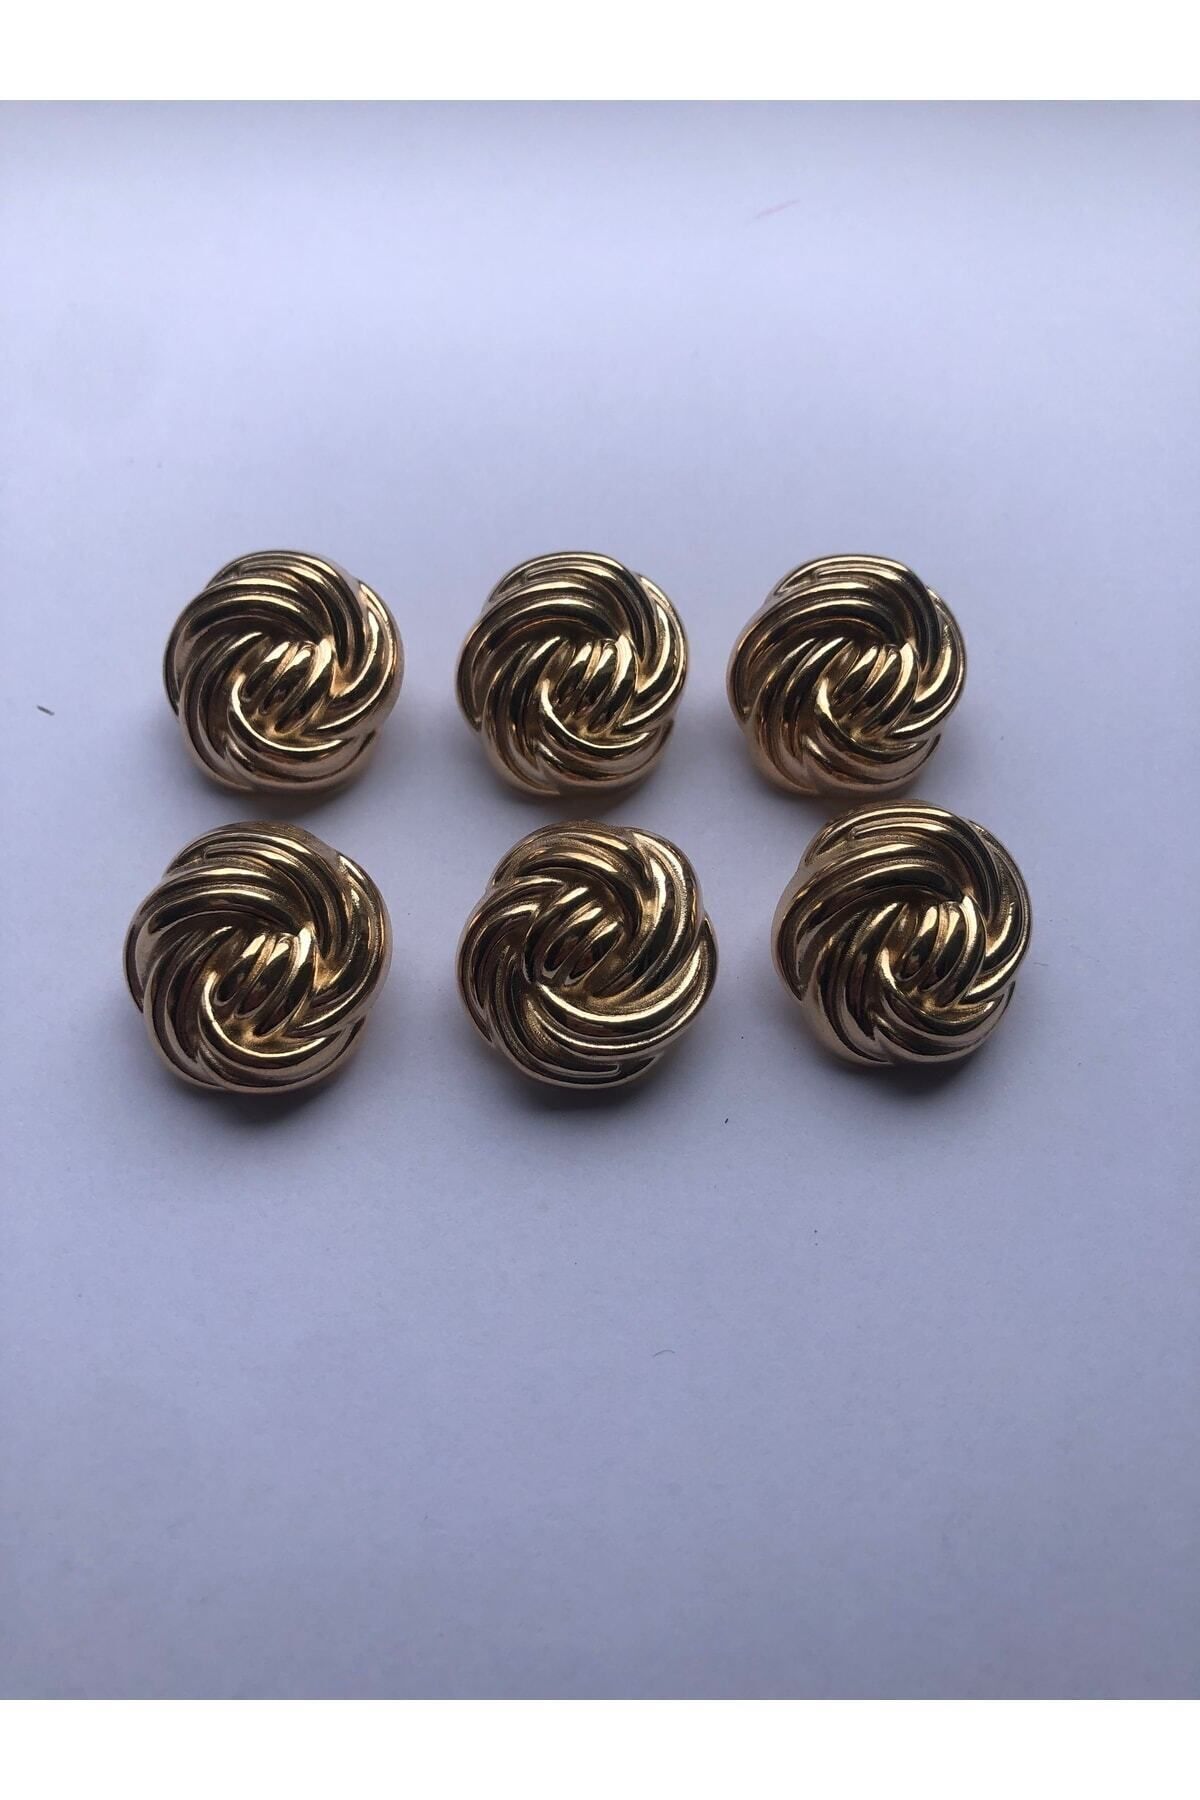 aensia Gold Altın Burgu Yumak Model Düğme Metal Düğme 36 Boy Düğme - 6lı Düğme Paketi